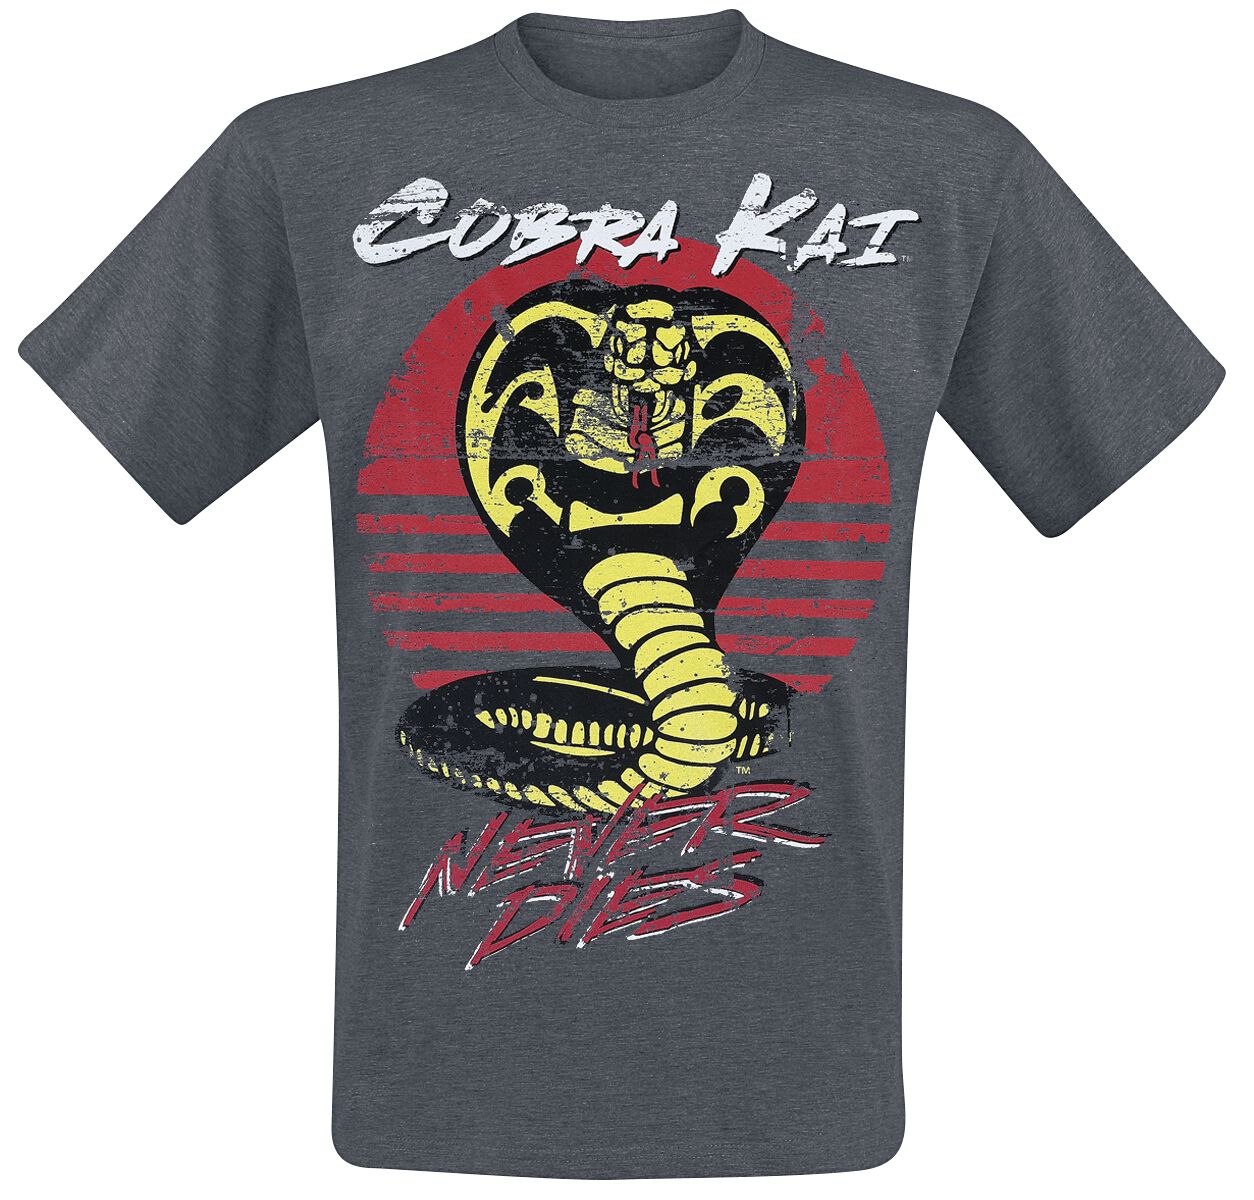 Cobra Kai T-Shirt - Never Dies! - M bis XXL - für Männer - Größe L - grau  - Lizenzierter Fanartikel